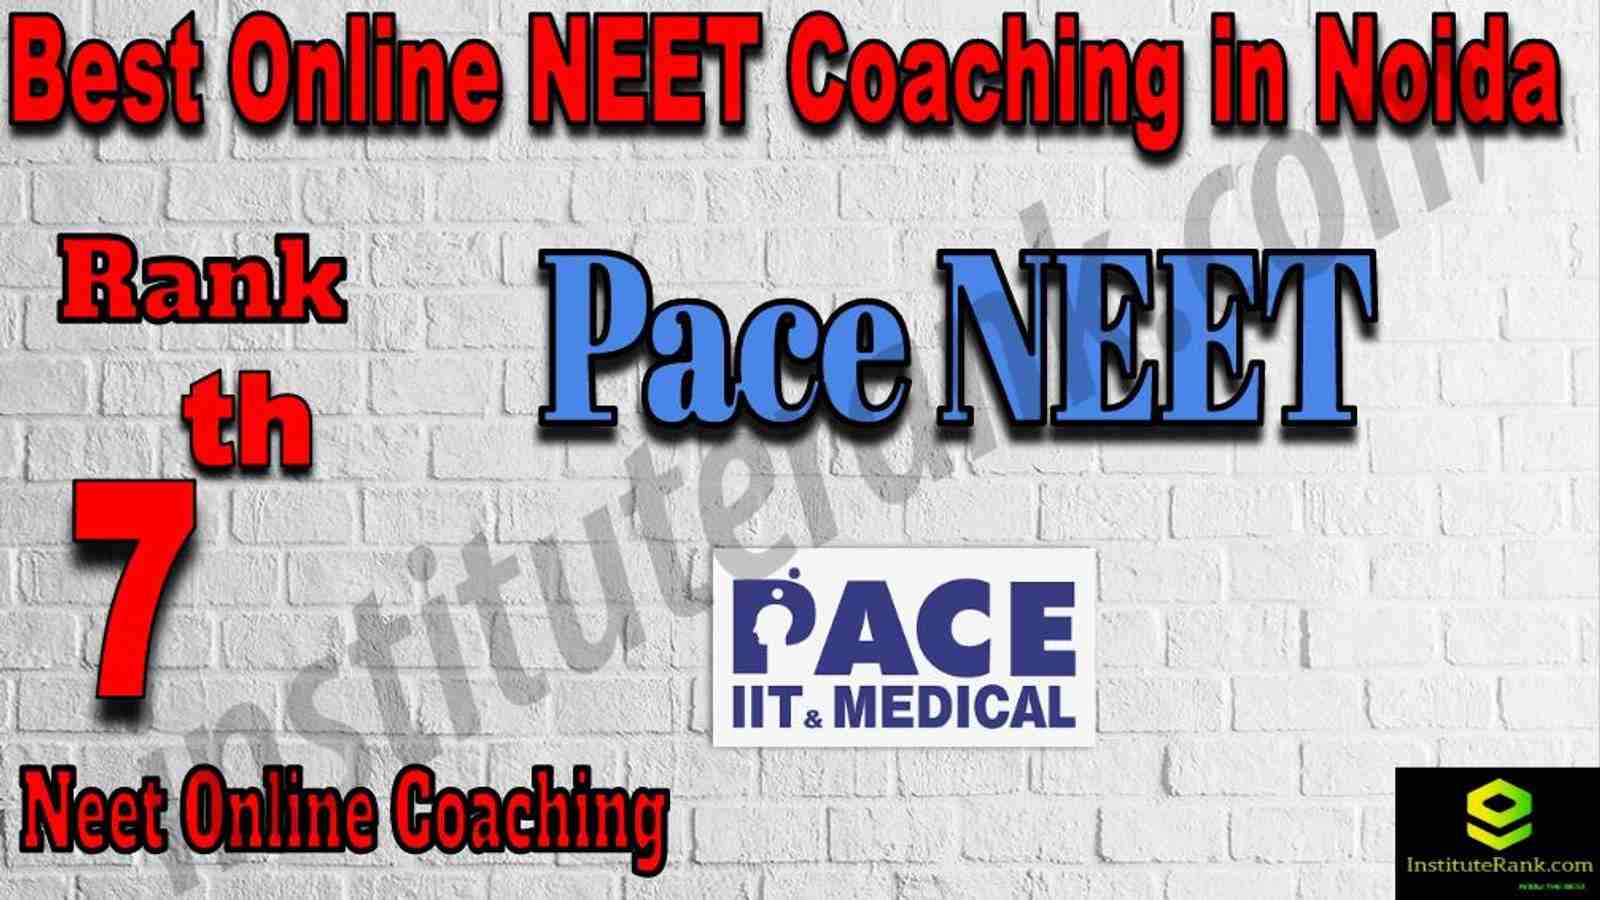 7th Best Online NEET Coaching in Noida